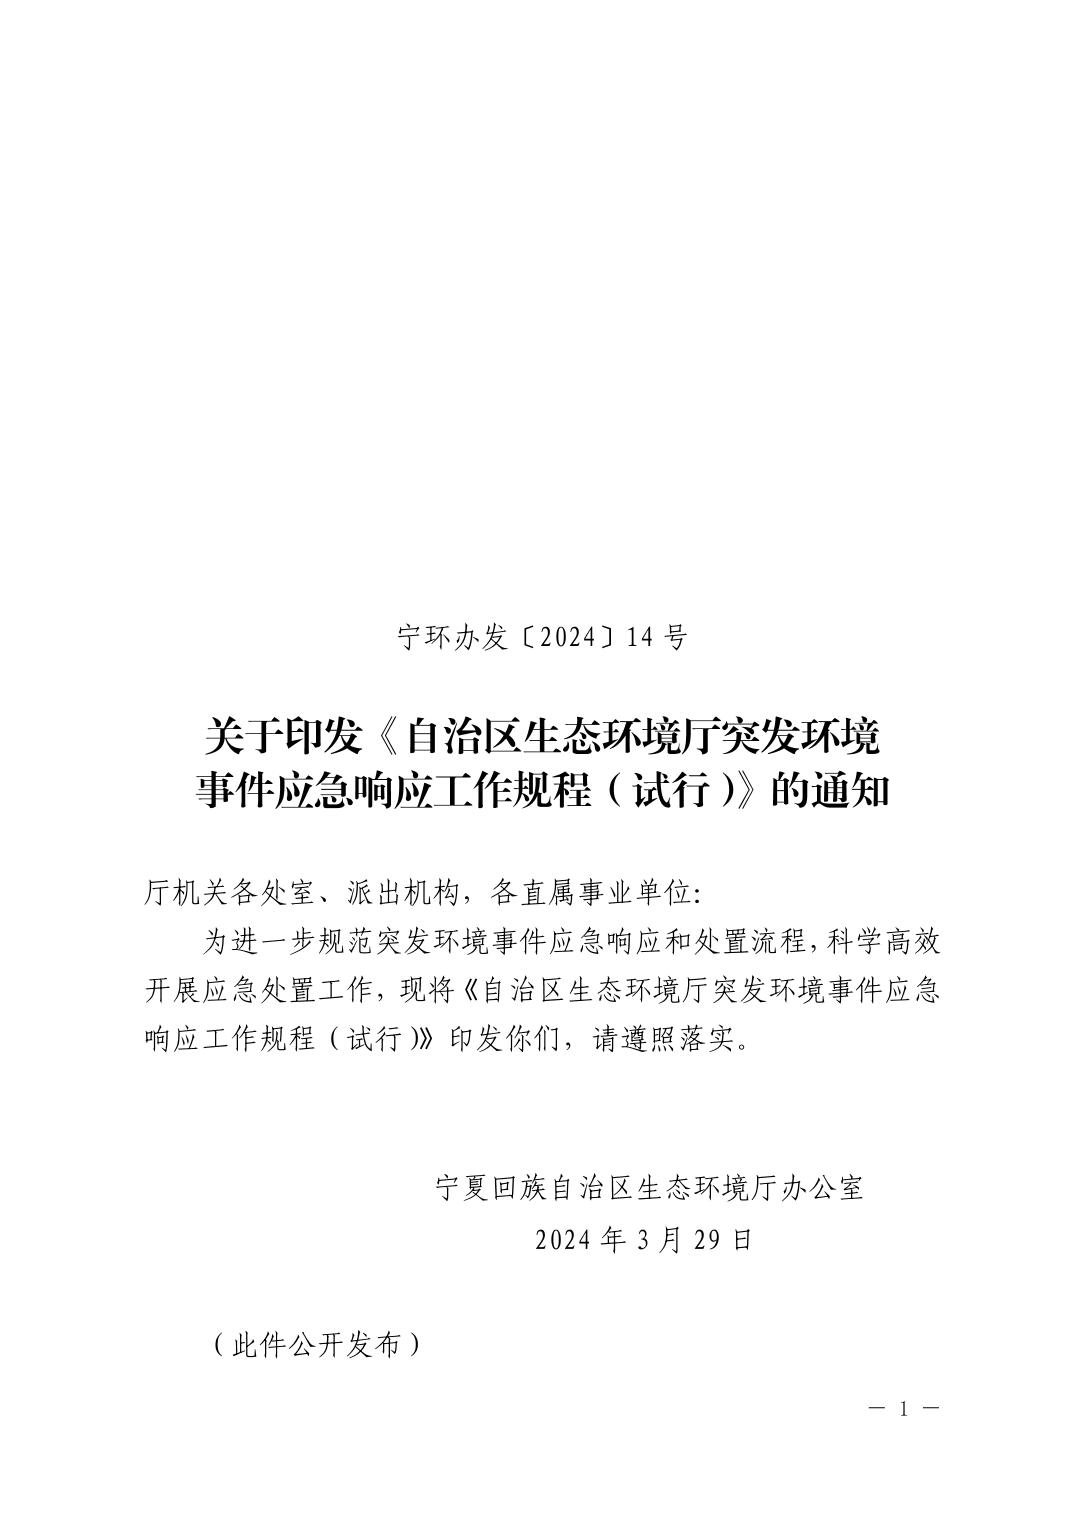 宁夏发布《自治区生态环境厅突发环境事件应急响应工作规程（试行）》-环保卫士